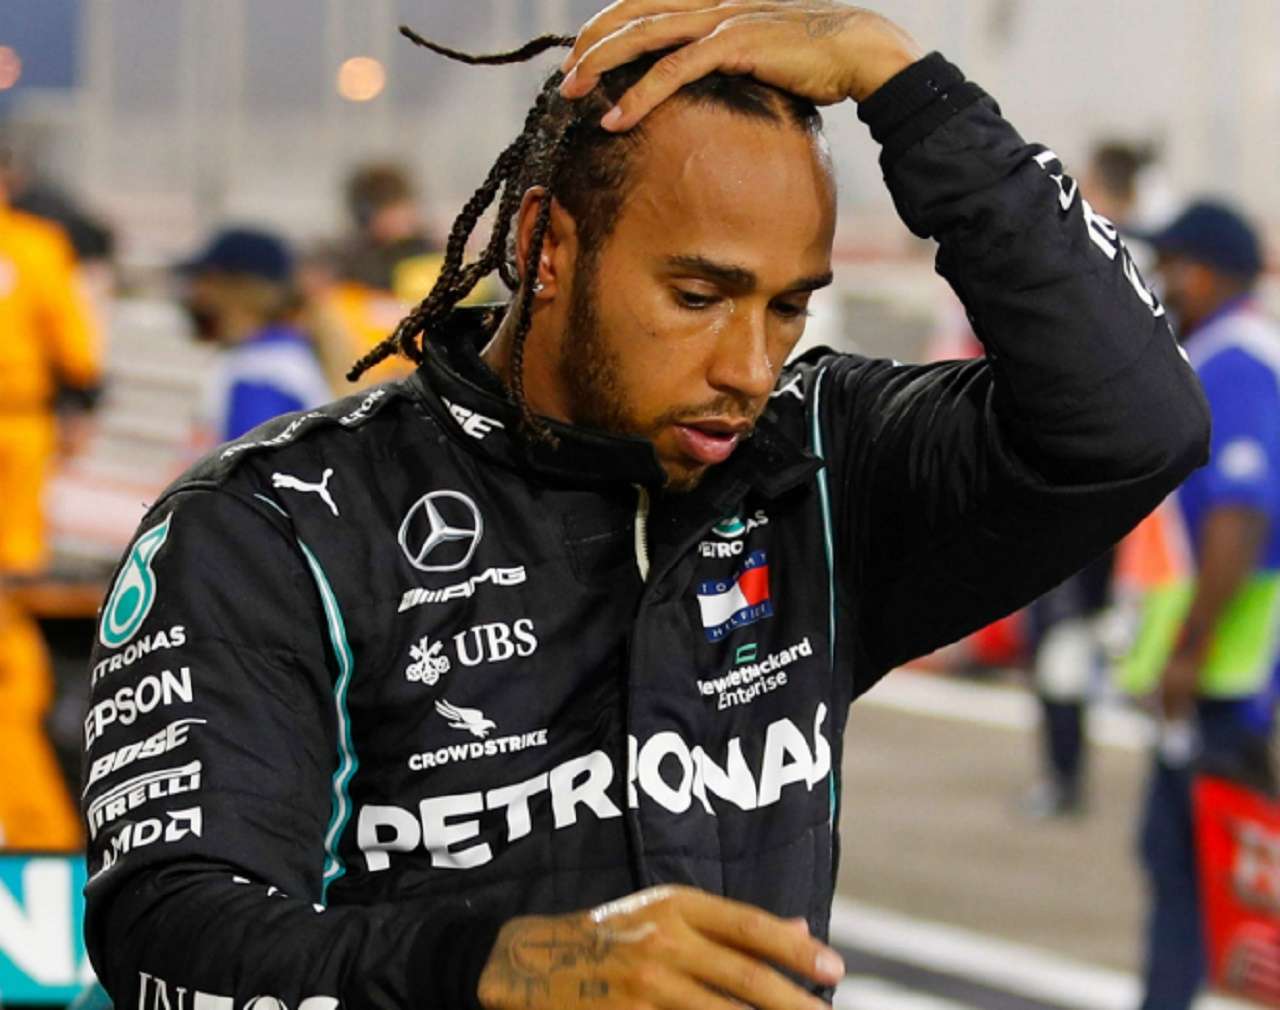 Hamilton correrá el GP de Abu Dhabi,  anunció oficialmente Mercedes